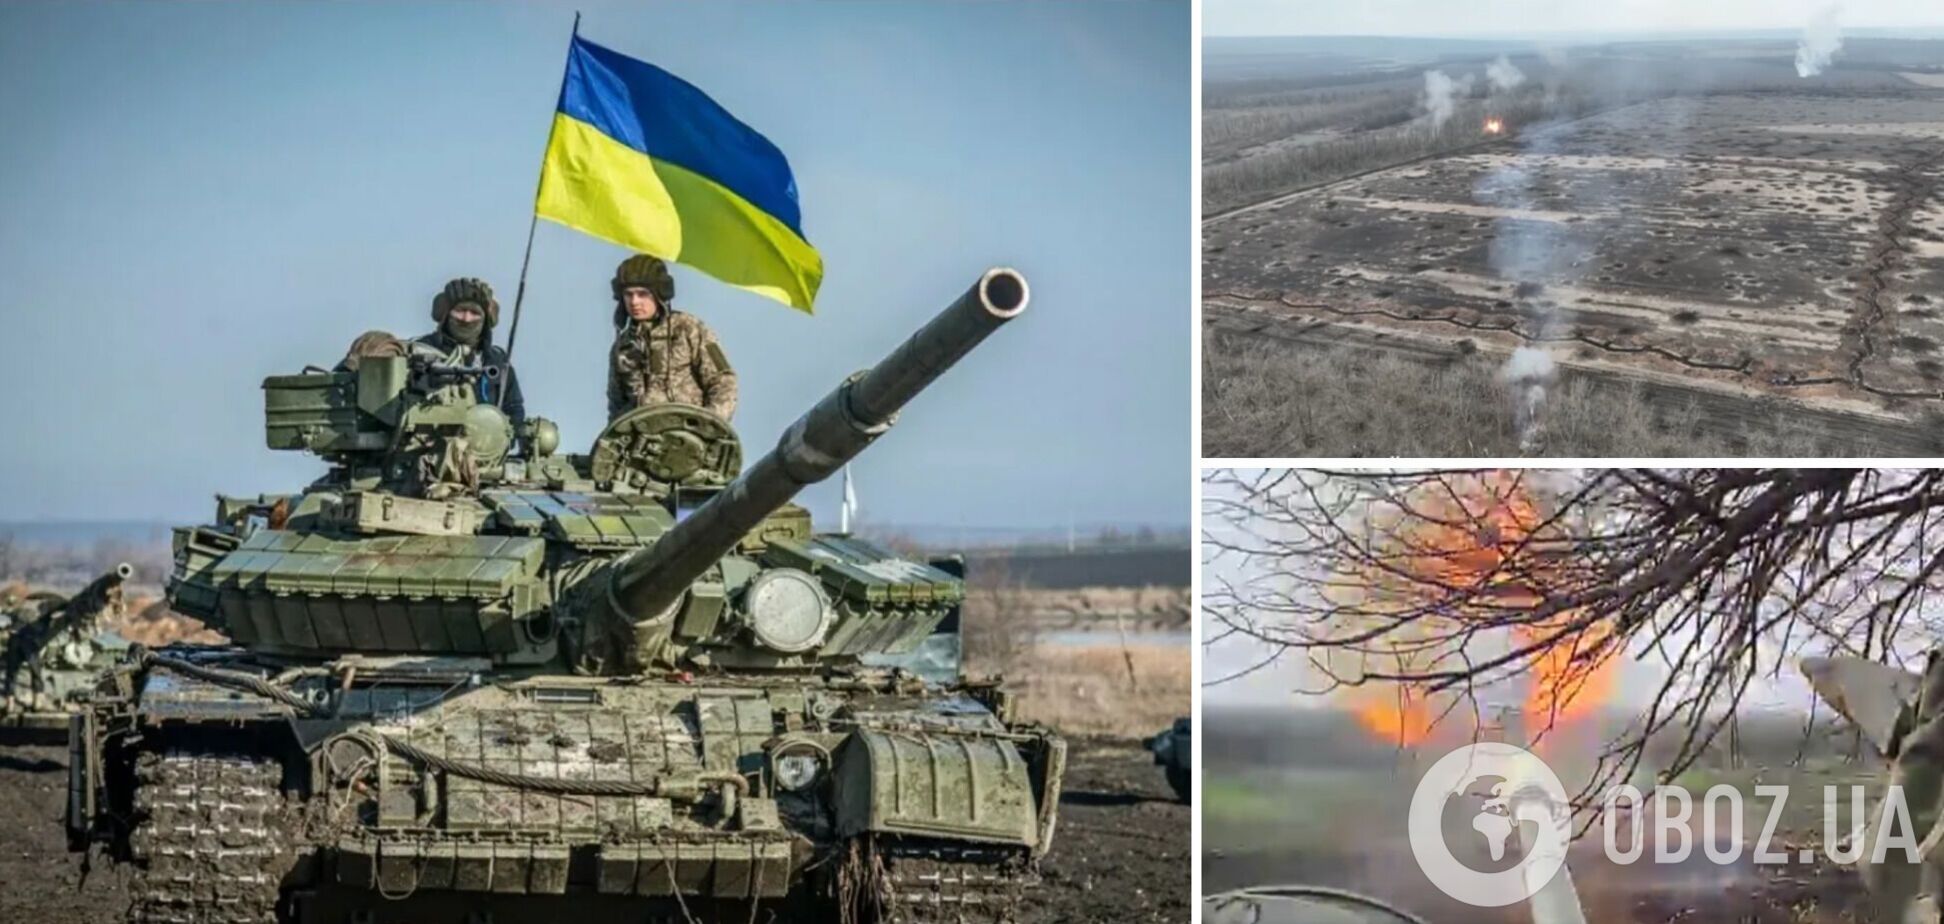 'Не я бью, верба бьет!' Украинские танкисты разбили врага, подошедшего 'на расстояние вытянутой руки'. Видео